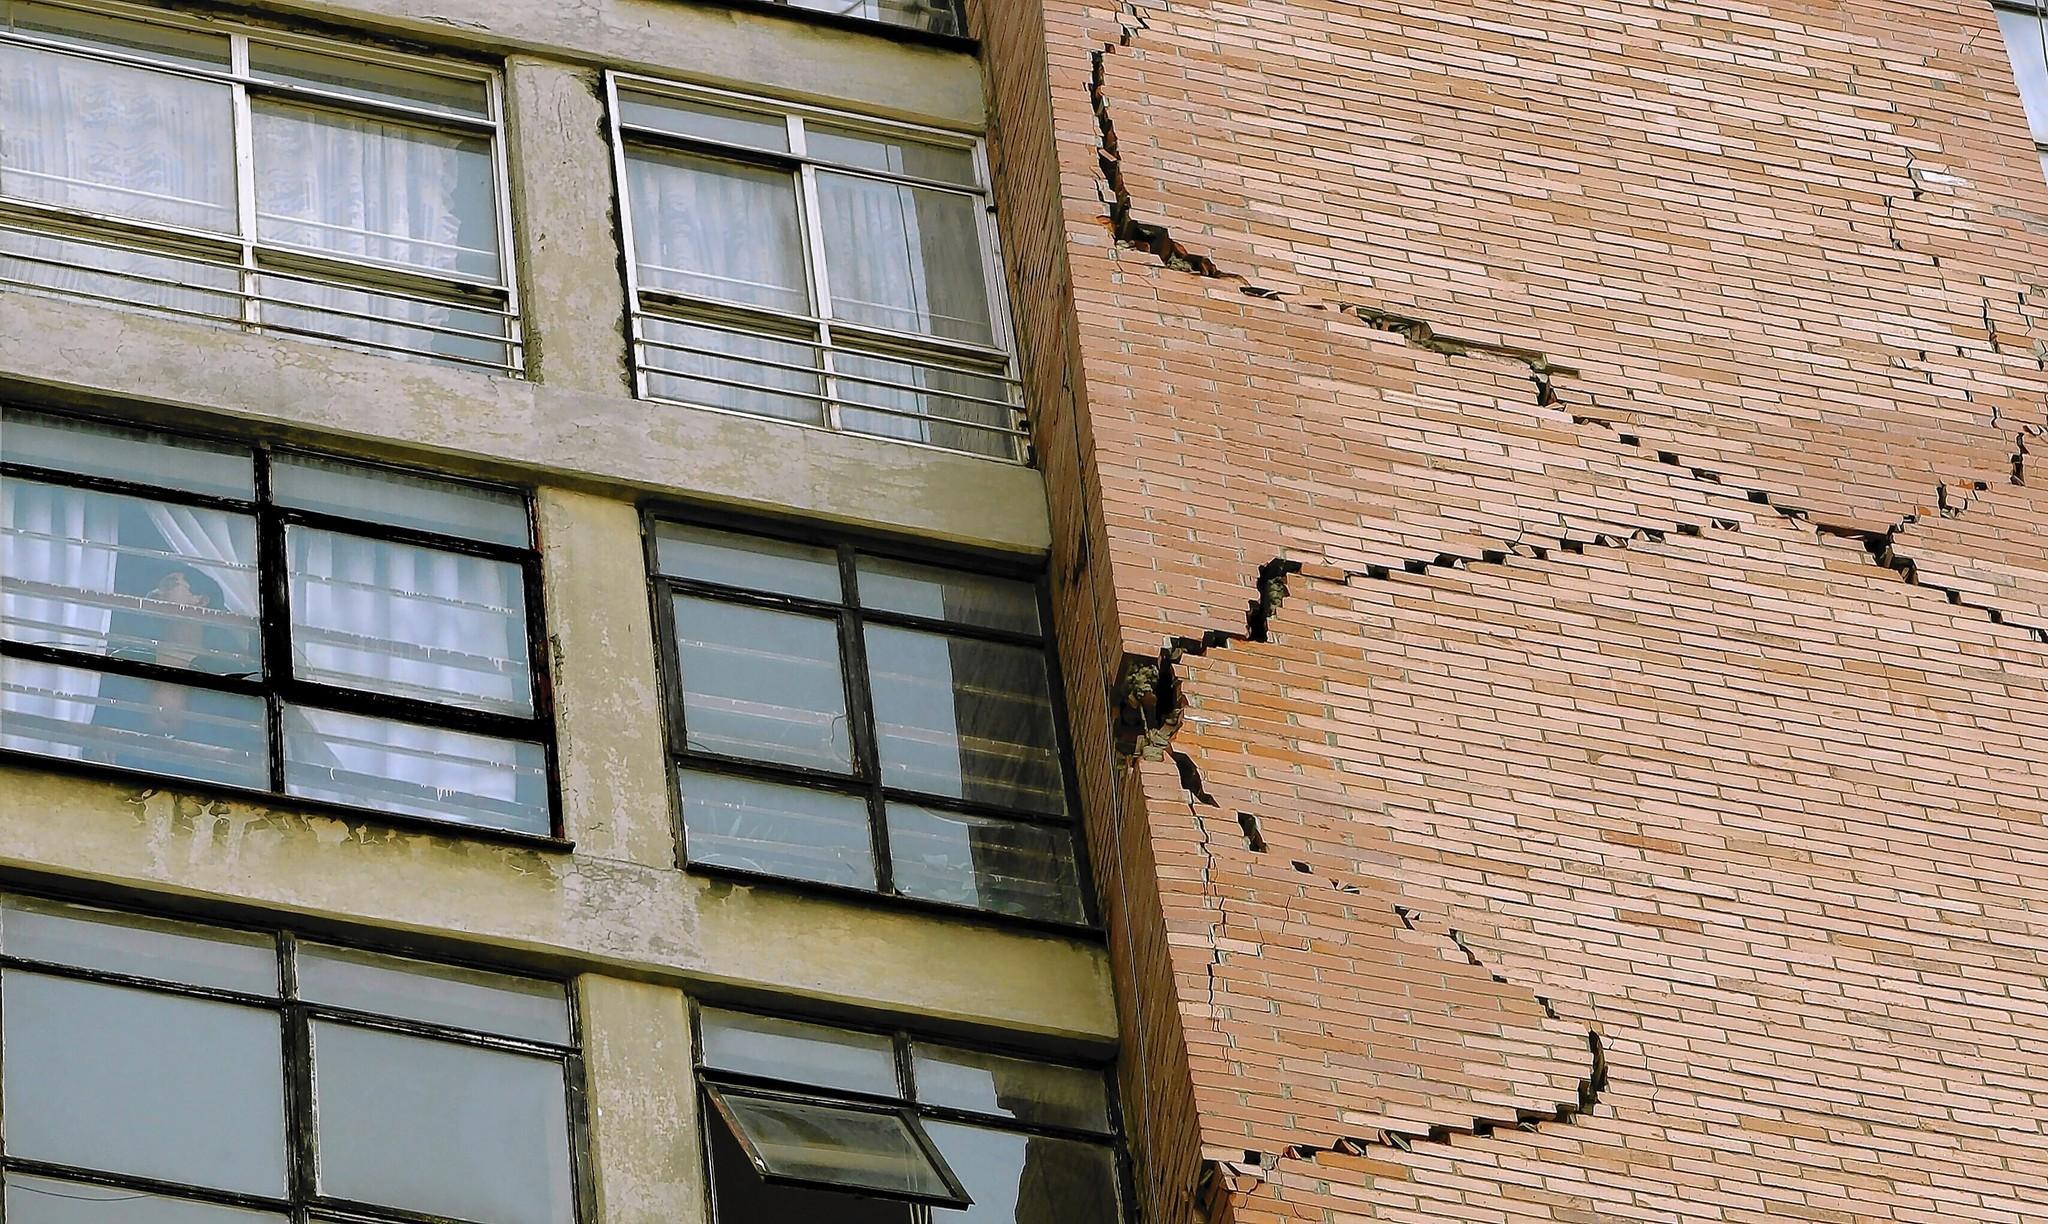 В ходе визуального осмотра здания на стене обнаружена трещина